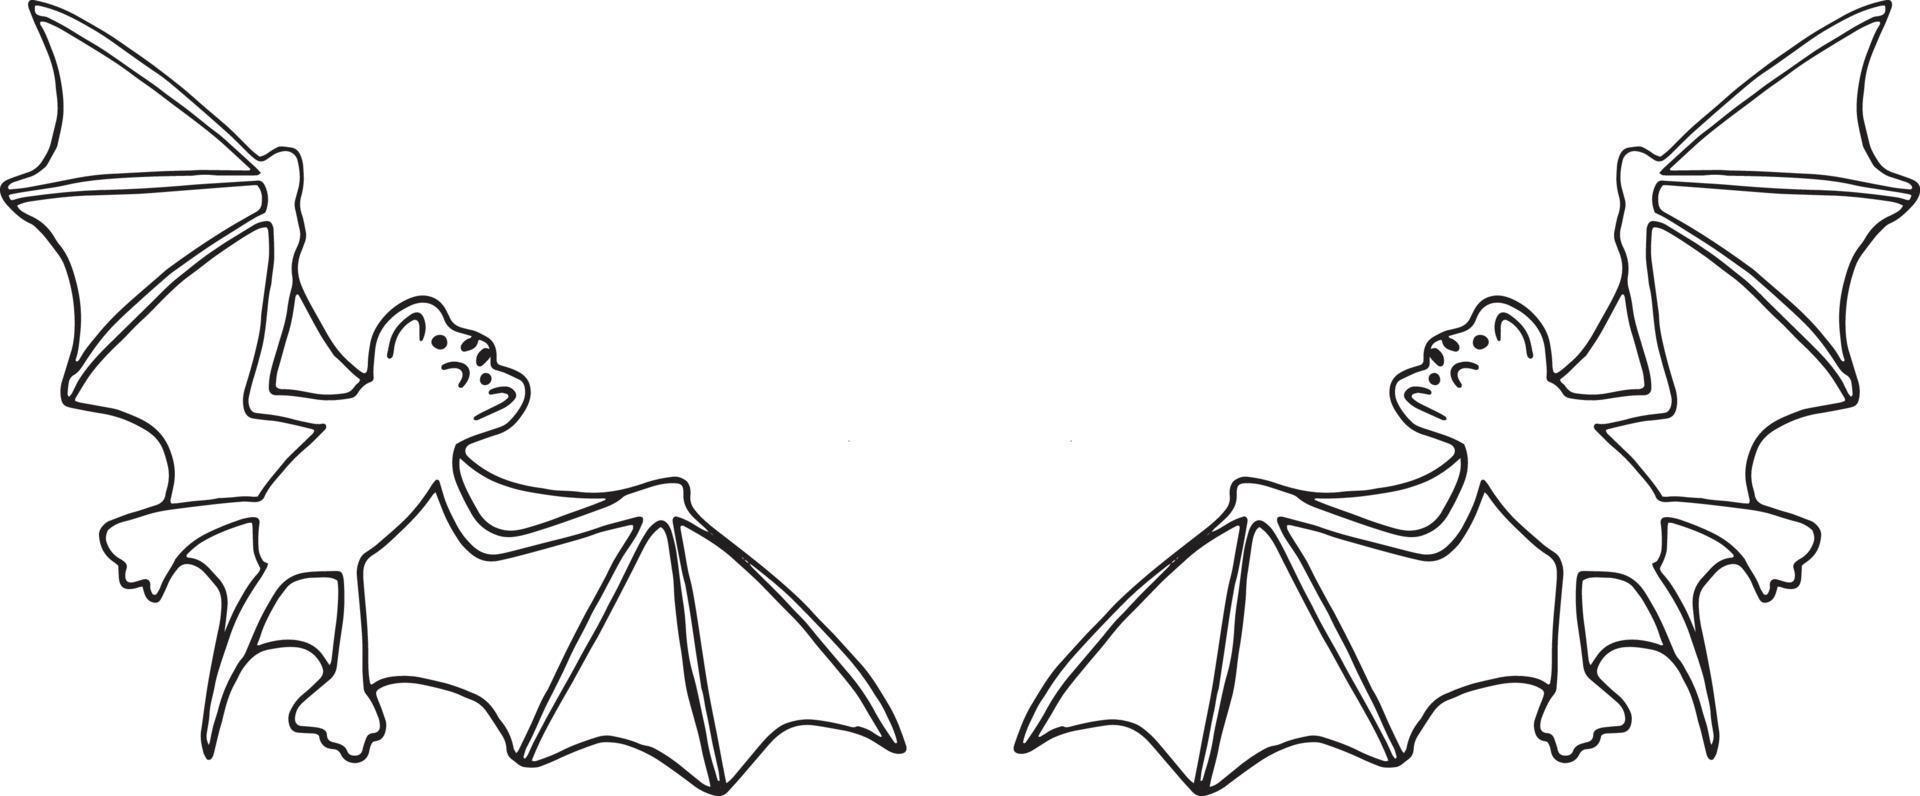 marco de dibujo de murciélago, doodle dibujado a mano de borde, minimalismo, monocromo. plantilla para tarjeta de diseño, invitación. halloween, animal nocturno volando vector